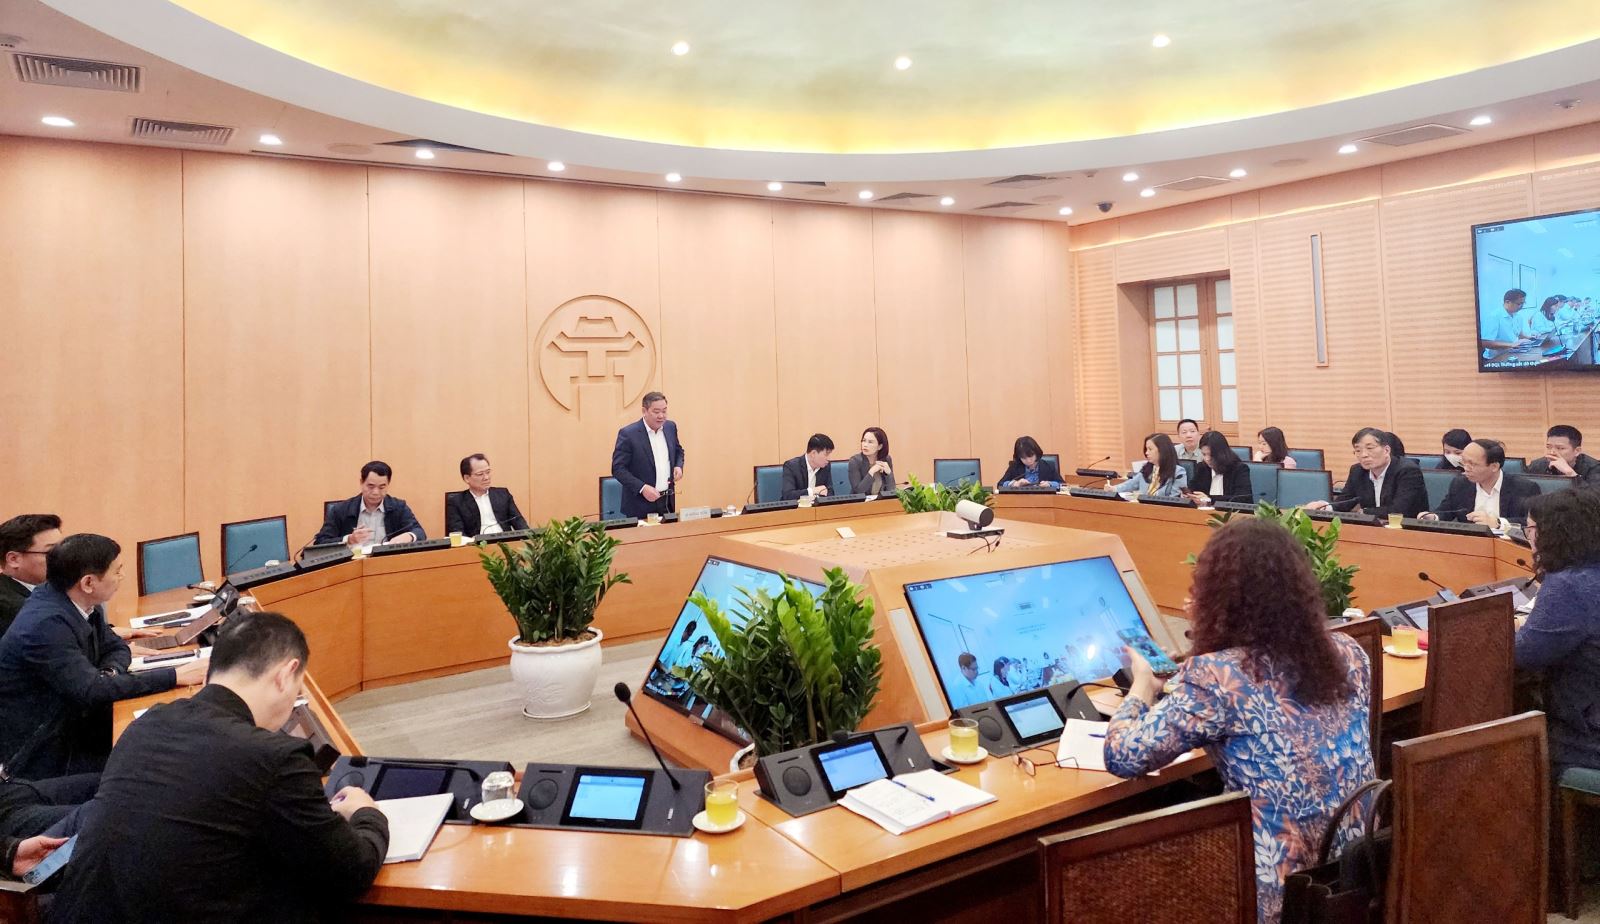 Phó Chủ tịch thường trực UBND tp Hà Nội Lê Hồng Sơn chủ trì buổi làm việc sáng ngày 15/1 rà soát các công việc chuẩn bị Hội thảo